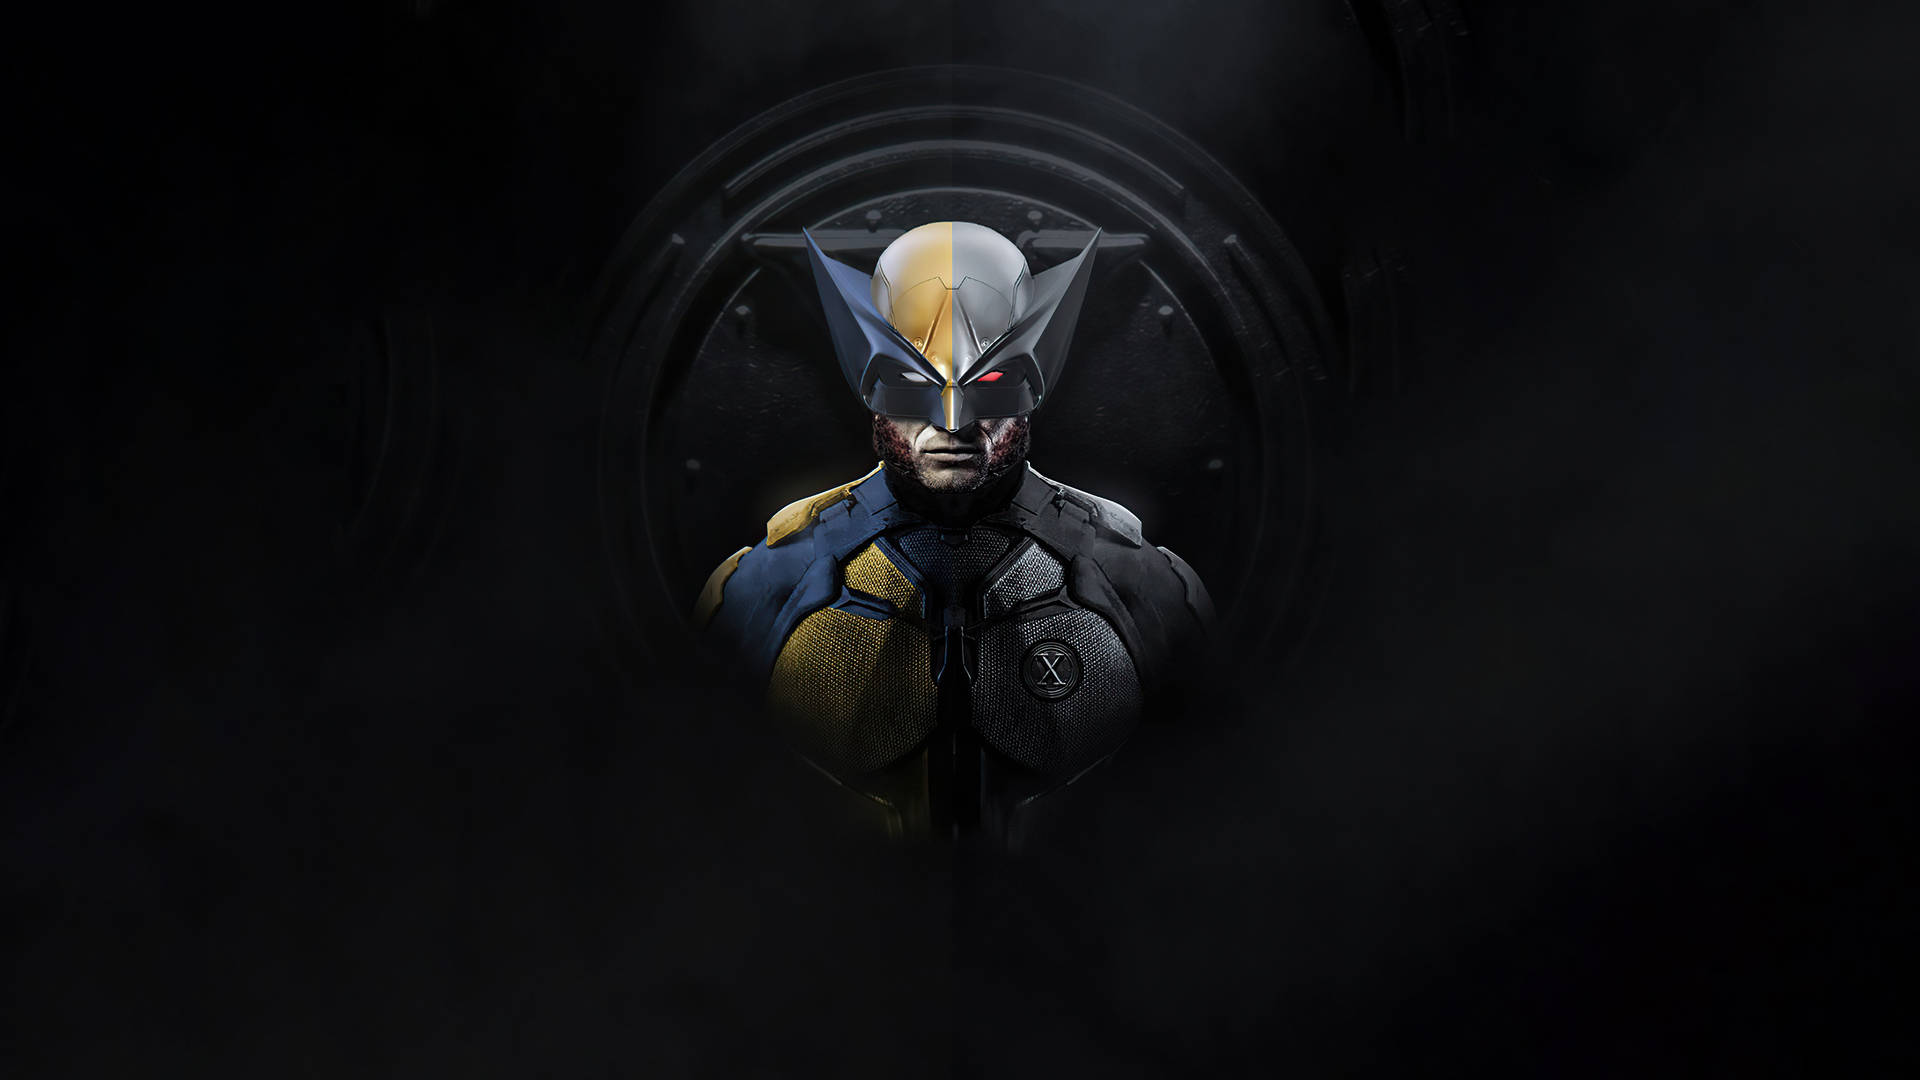 1920x1080 Hd Wolverine Portrait Background